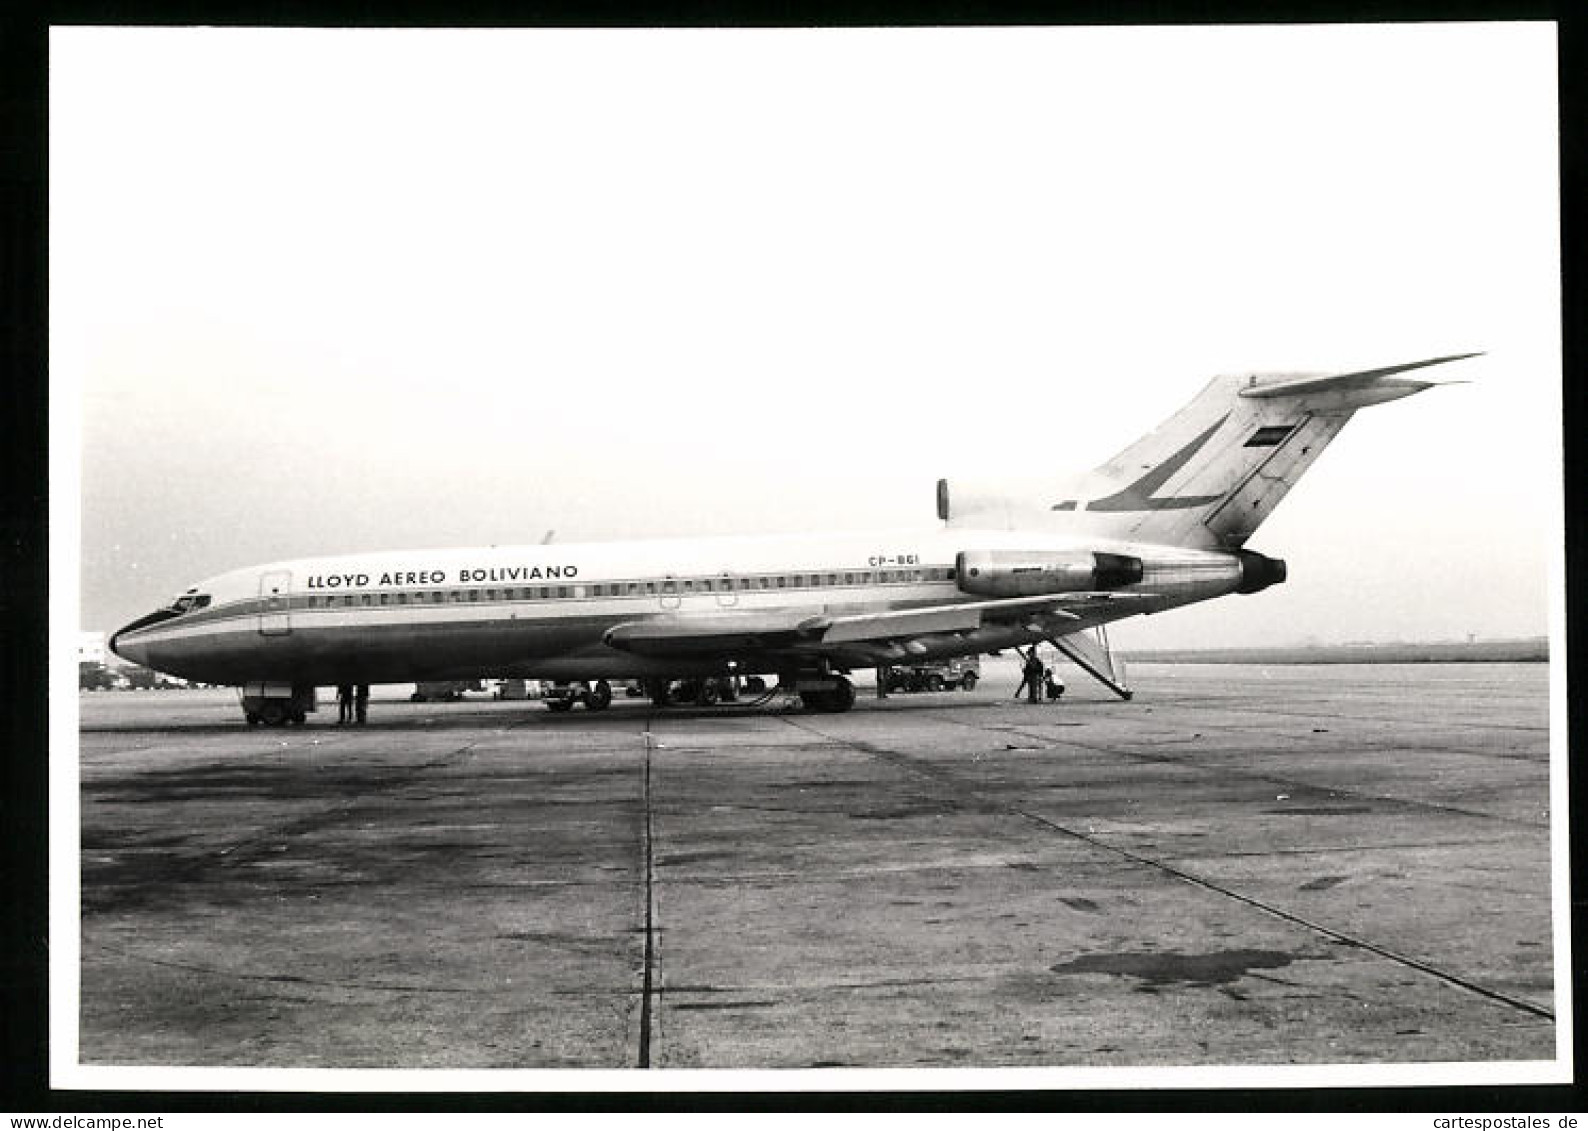 Fotografie Flugzeug Boeing 727, Passagierflugzeug Lloyd Aereo Boliviano, Kennung CP-861  - Luchtvaart